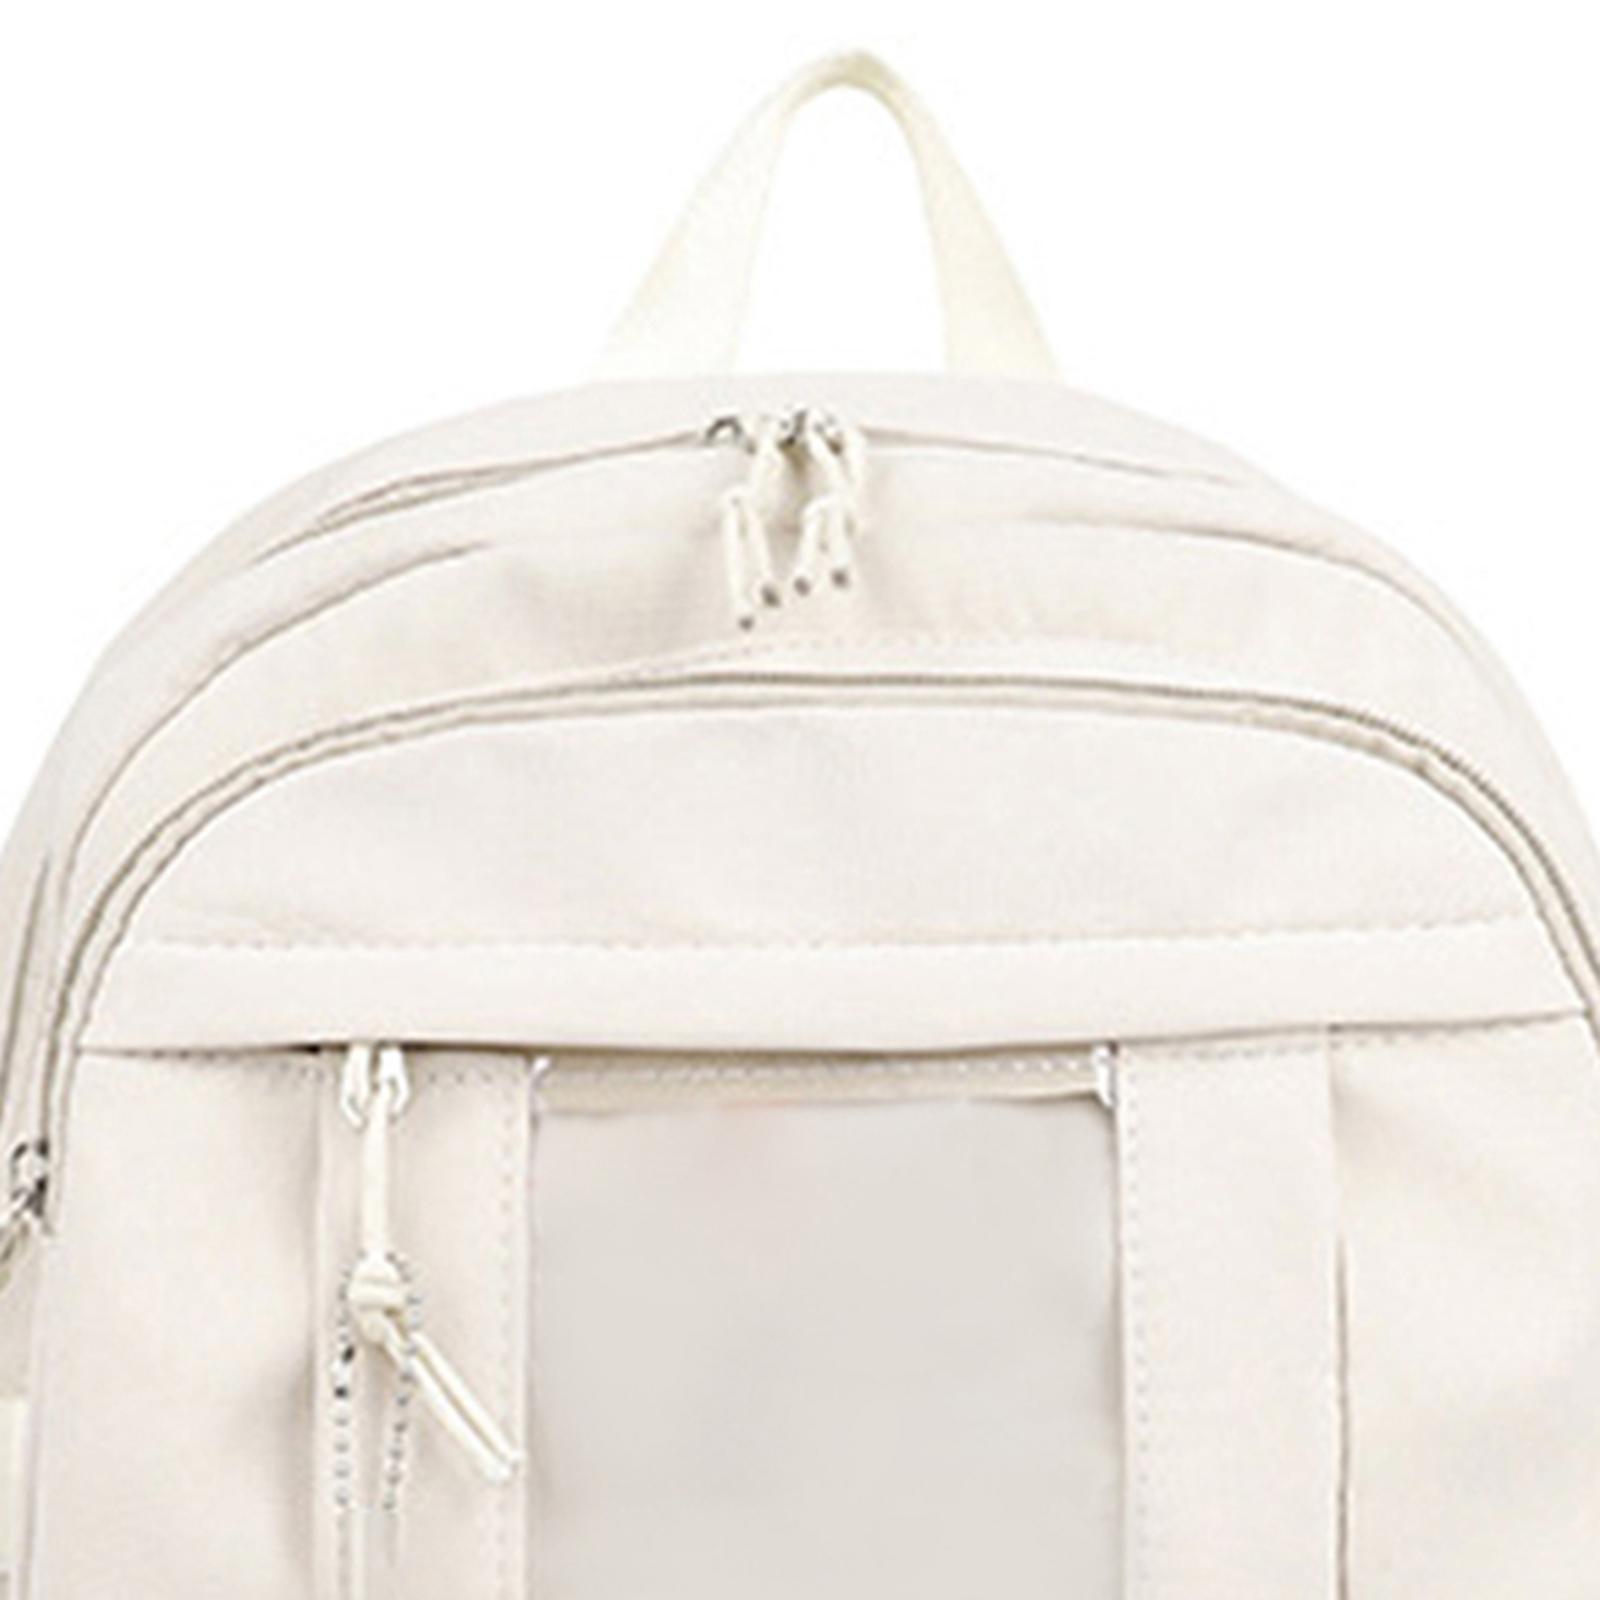 Cute Girls Backpack Women Large Capacity Simple School Bag for Teens Female Student Ladies Travel Bag